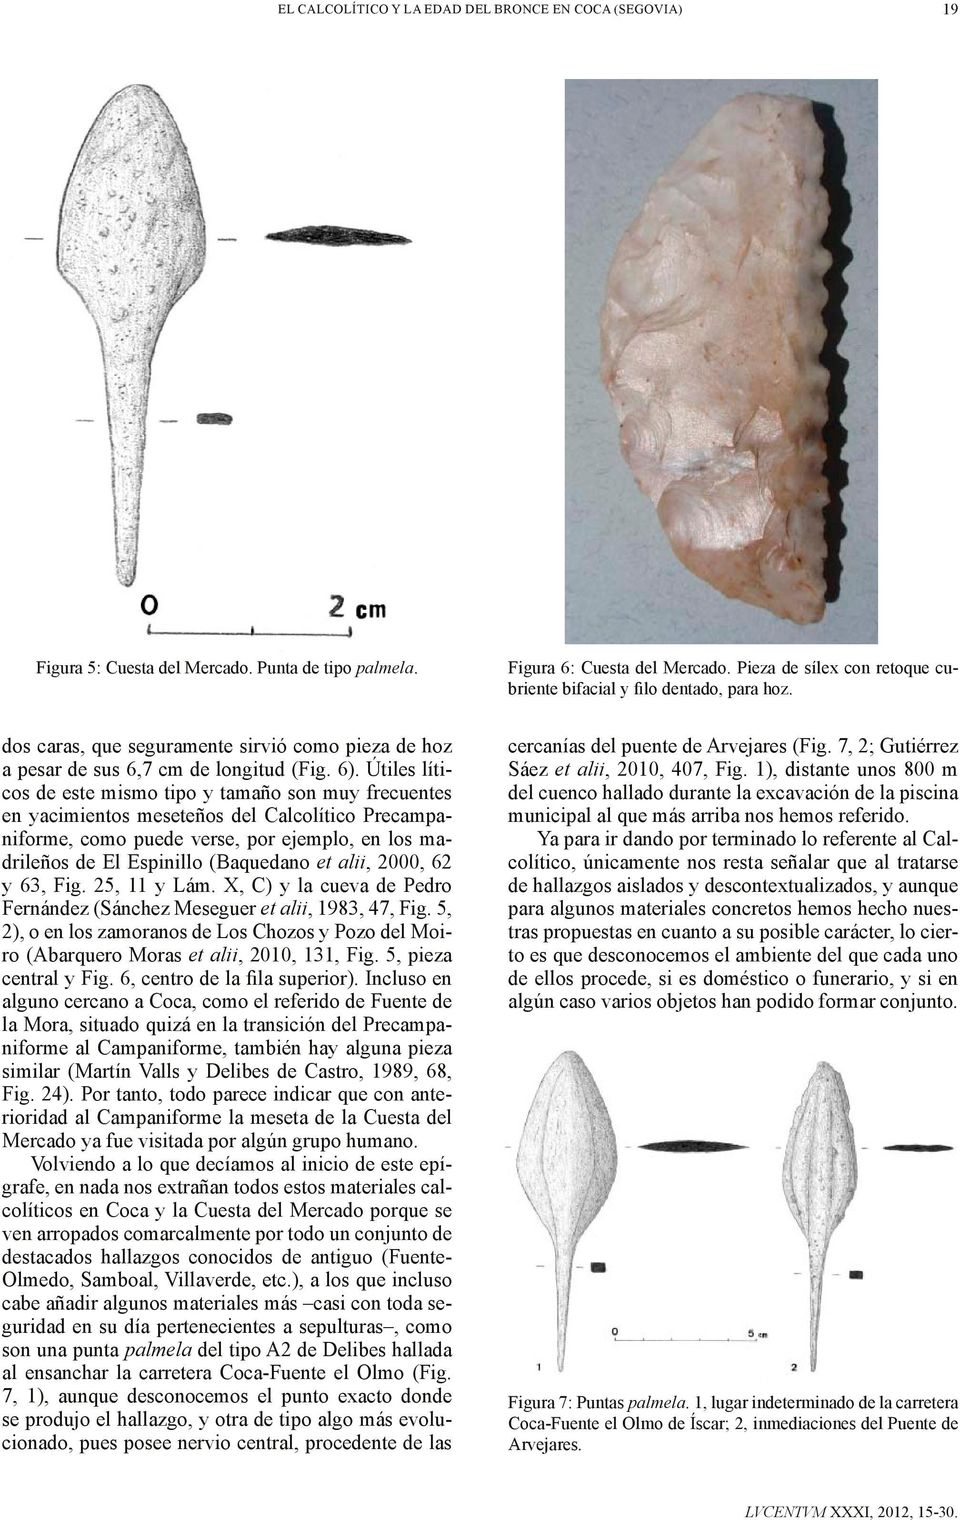 Útiles líticos de este mismo tipo y tamaño son muy frecuentes en yacimientos meseteños del Calcolítico Precampaniforme, como puede verse, por ejemplo, en los madrileños de El Espinillo (Baquedano et